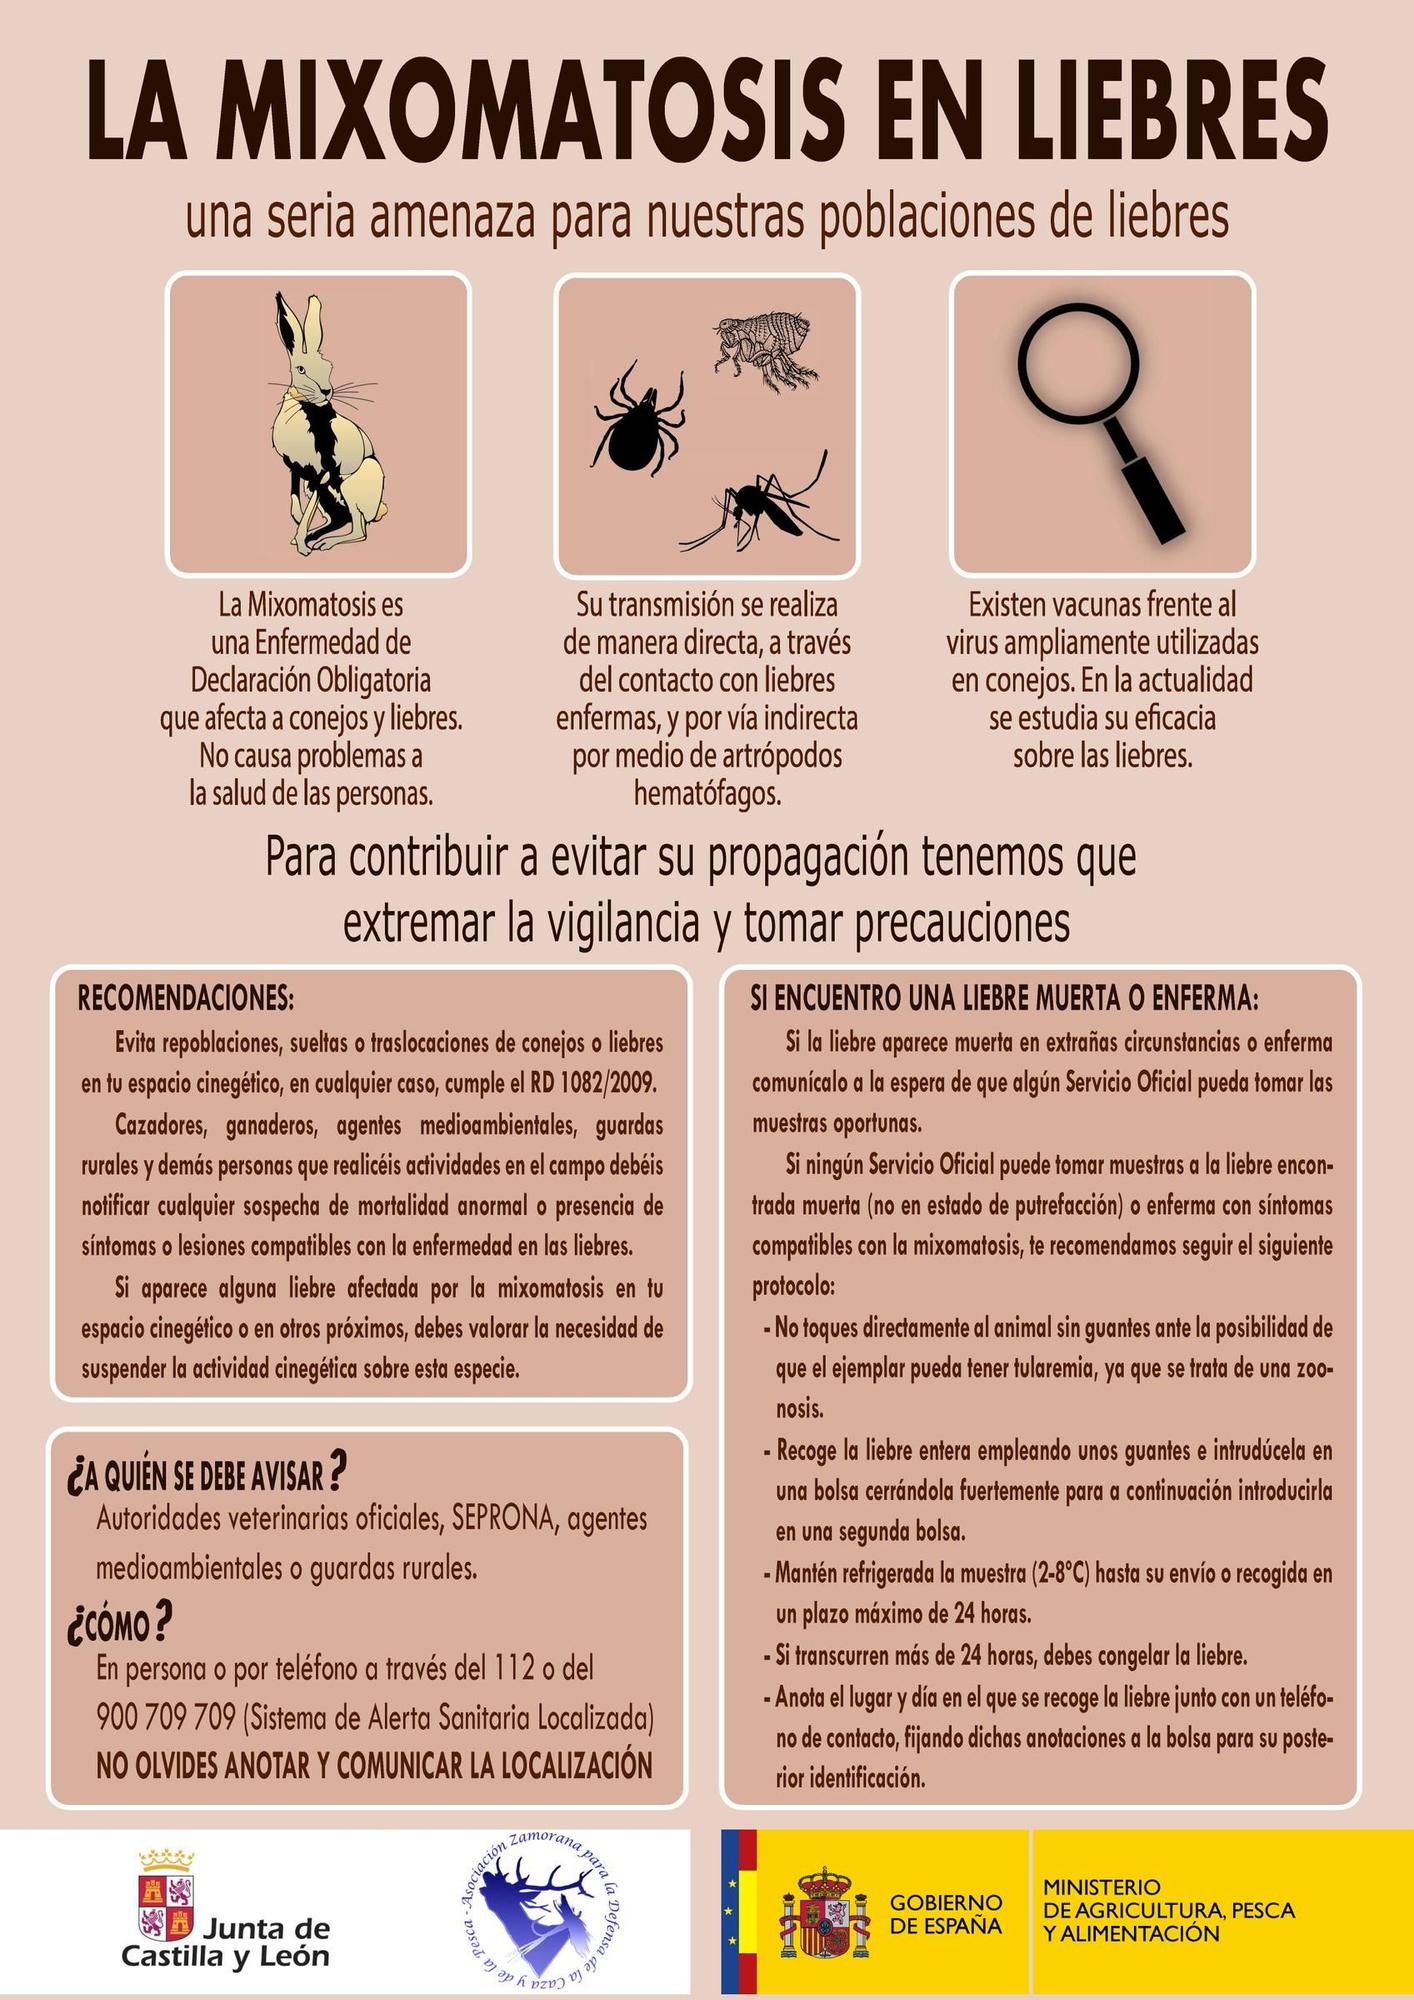 Infografía sobre el protocolo a seguir en caso de hallar liebres enfermas o muertas